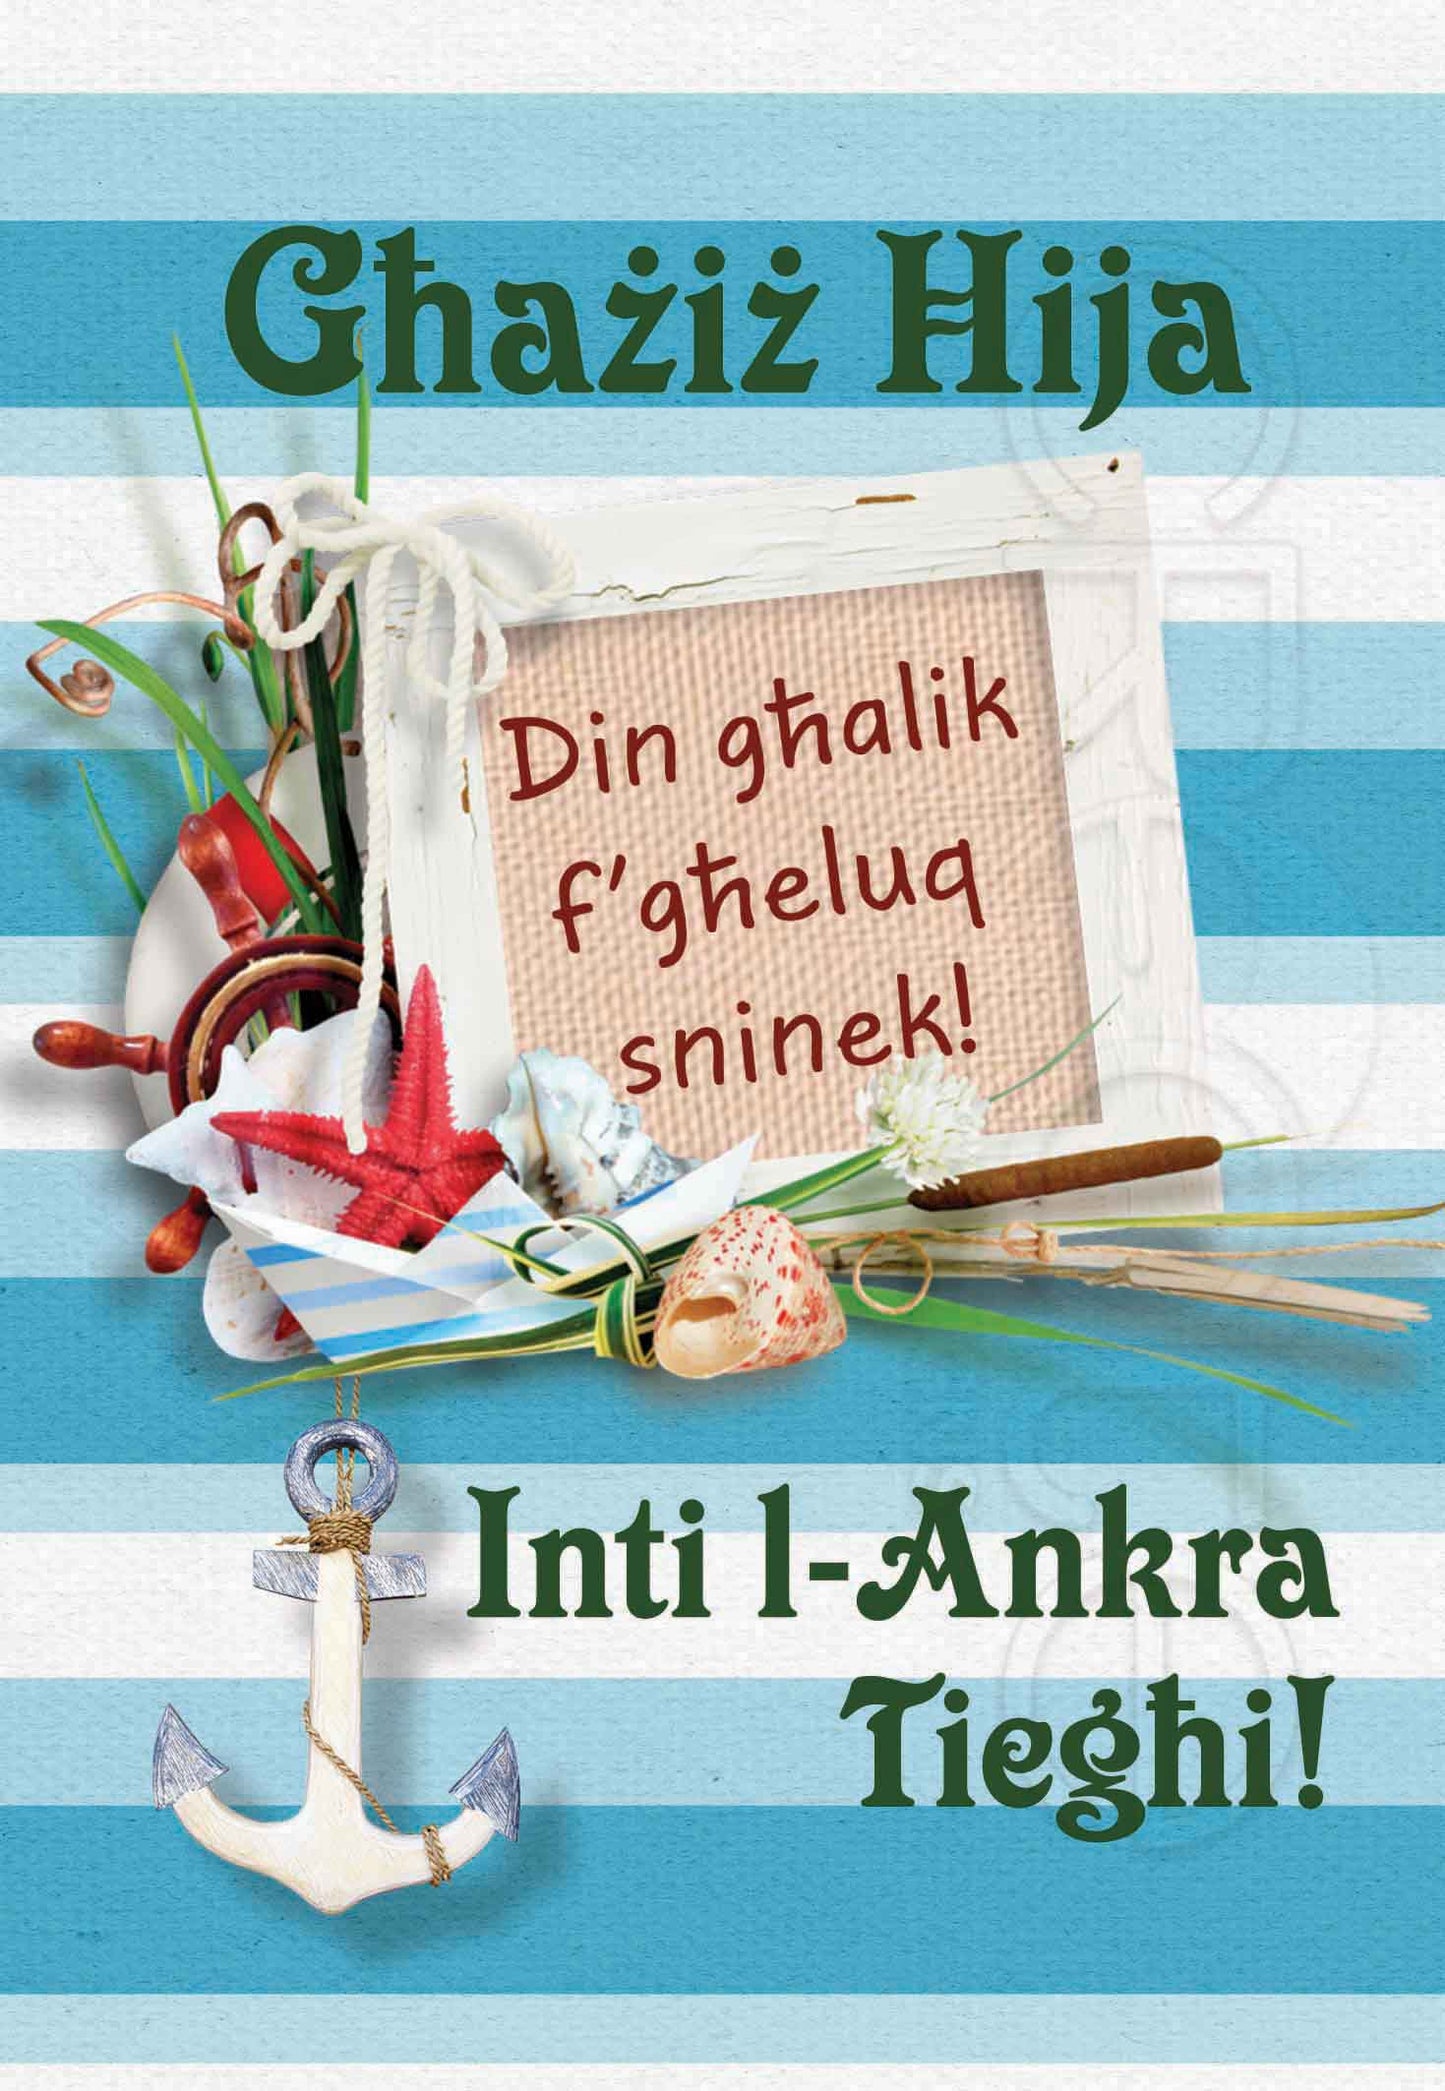 Kartolina għall-Ħuk f'għeluq sninu bl-ankra